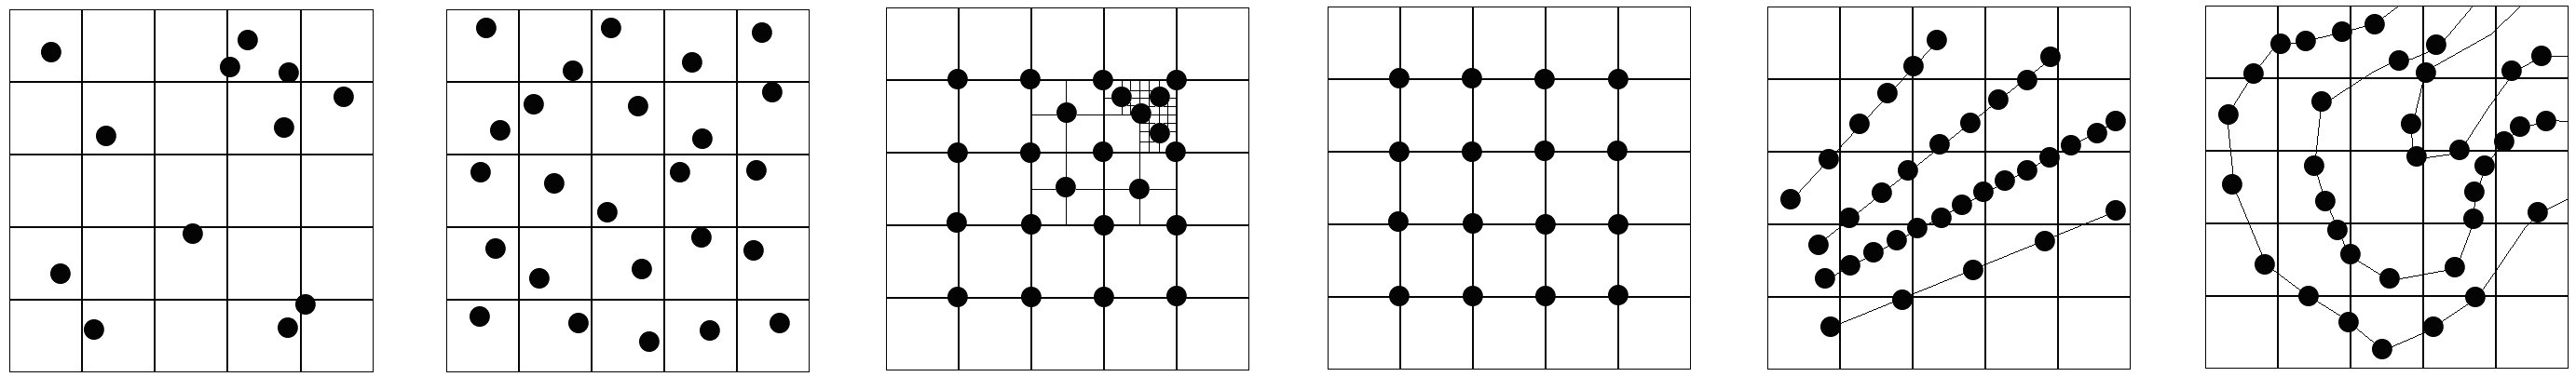 Mintavételi technikák a) egyszerű véletlen mintavétel, b) rétegezett véletlen mintavétel, c) progresszív mintavétel, d) szabályos mintavétel, e) keresztszelvény, profil, f) szintvonalak mentén történő mintavétel